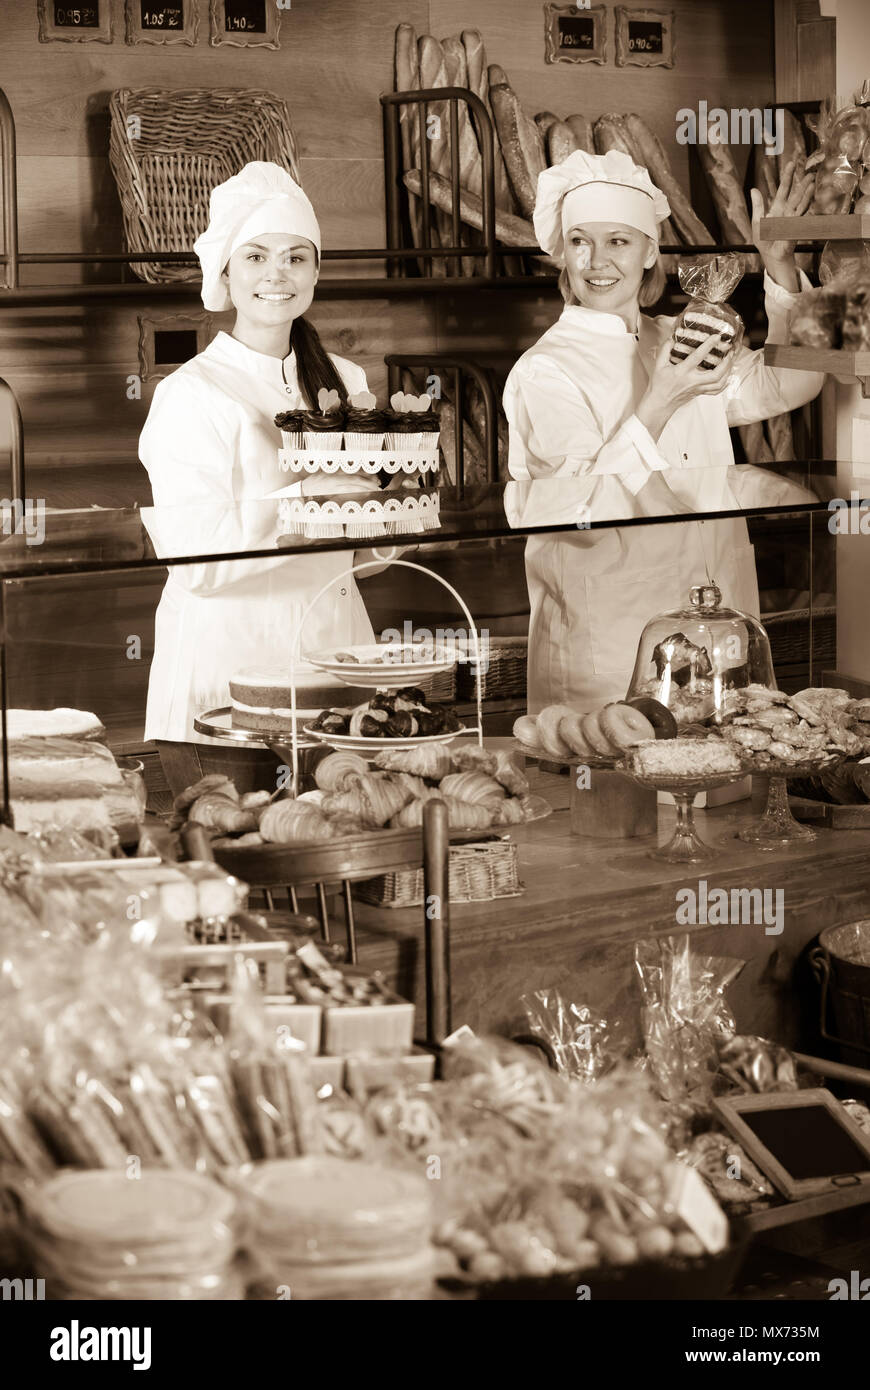 Deux femmes positive vendeur la pâtisserie fraîche et miches de pain l'article Banque D'Images